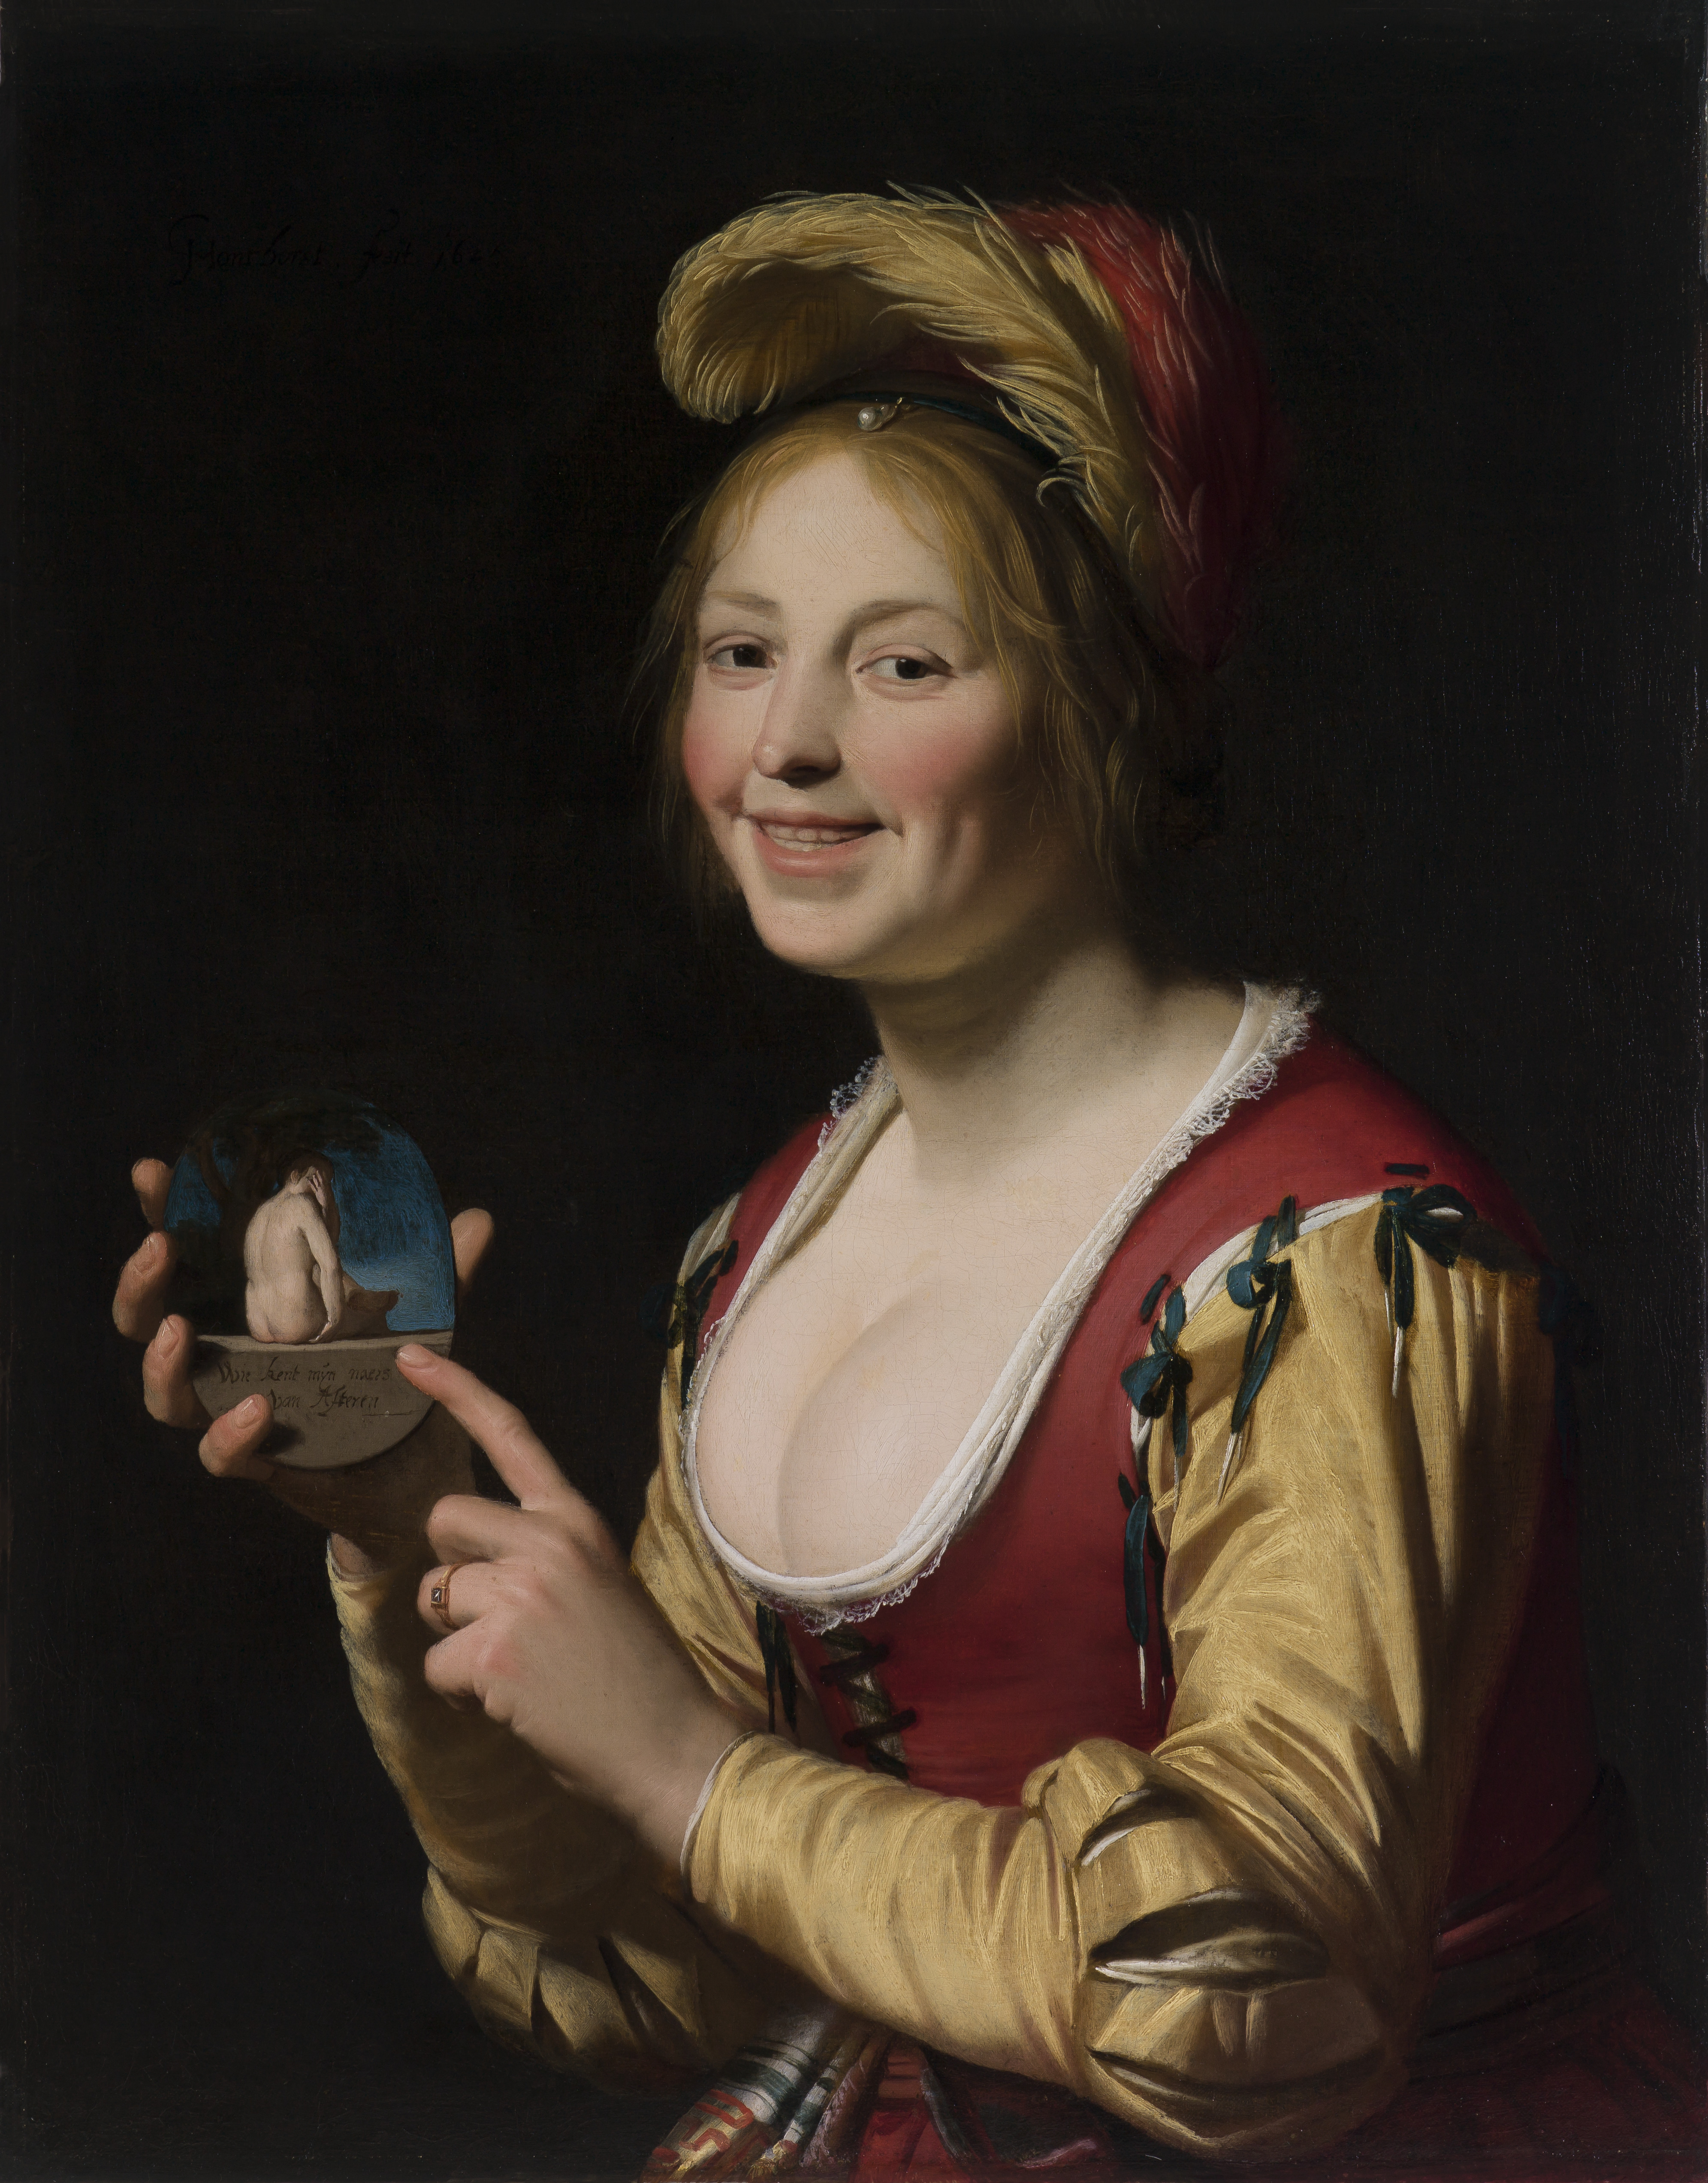 Χαμογελαστό κορίτσι, μία εταίρα, που κρατάει μία άσεμνη εικόνα by Χέραρντ φαν Χόντχορστ - 1625 - 81,3 x 64,1 εκ. 